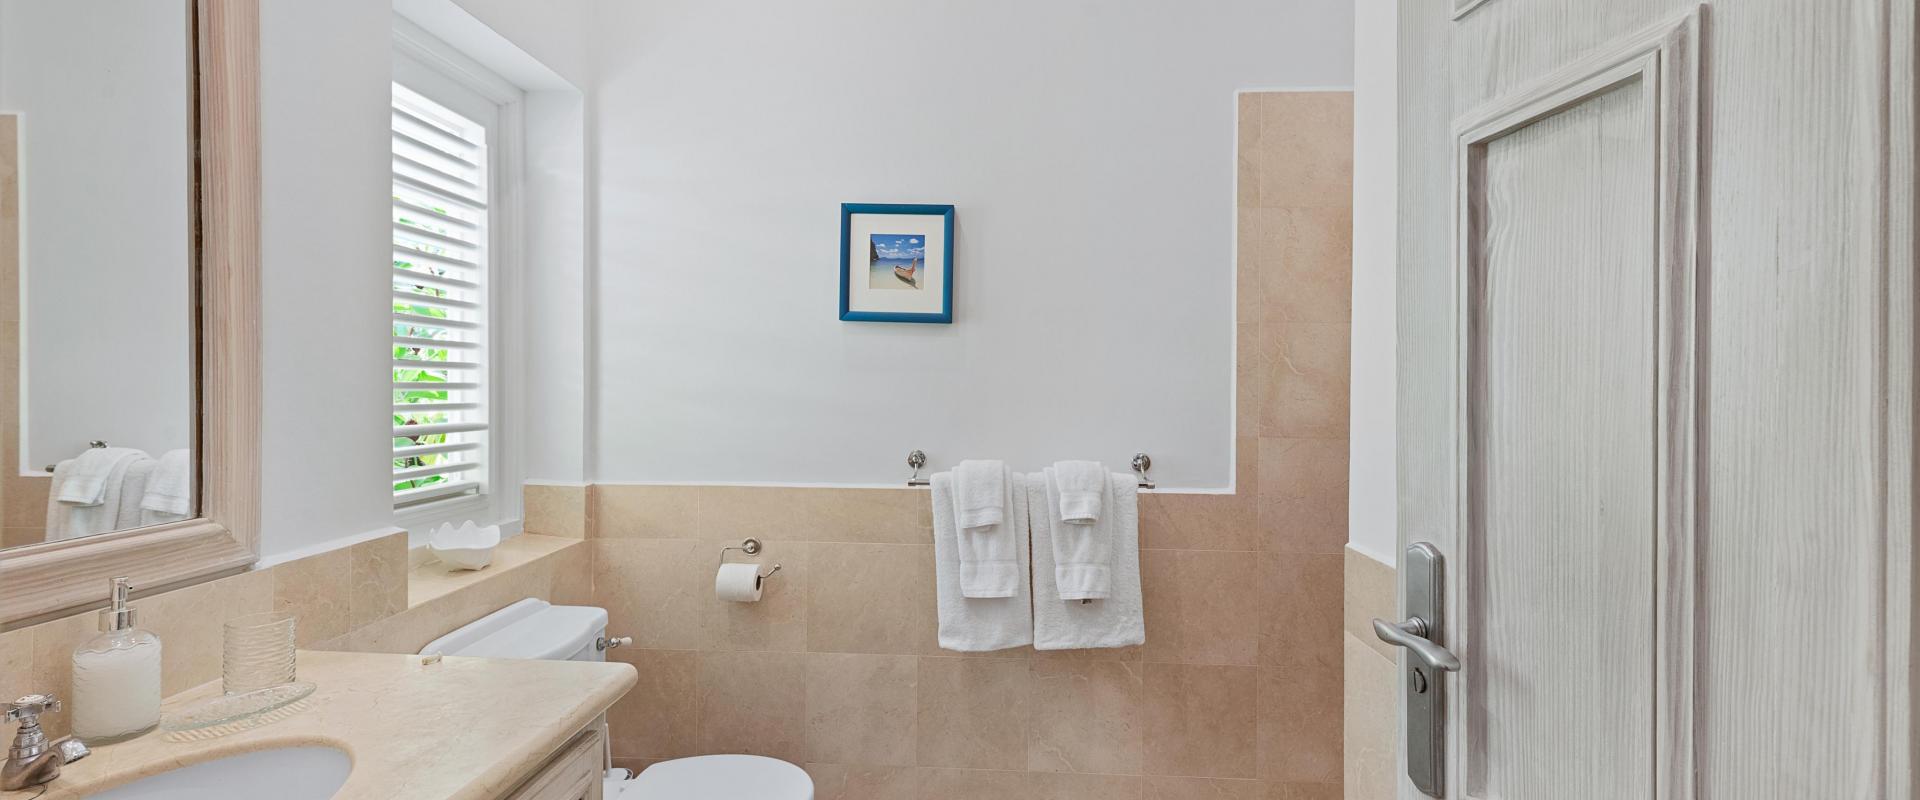 Villa Rosa Holiday Rental Villa In Royal Westmoreland Barbados Bathroom 3 Shower